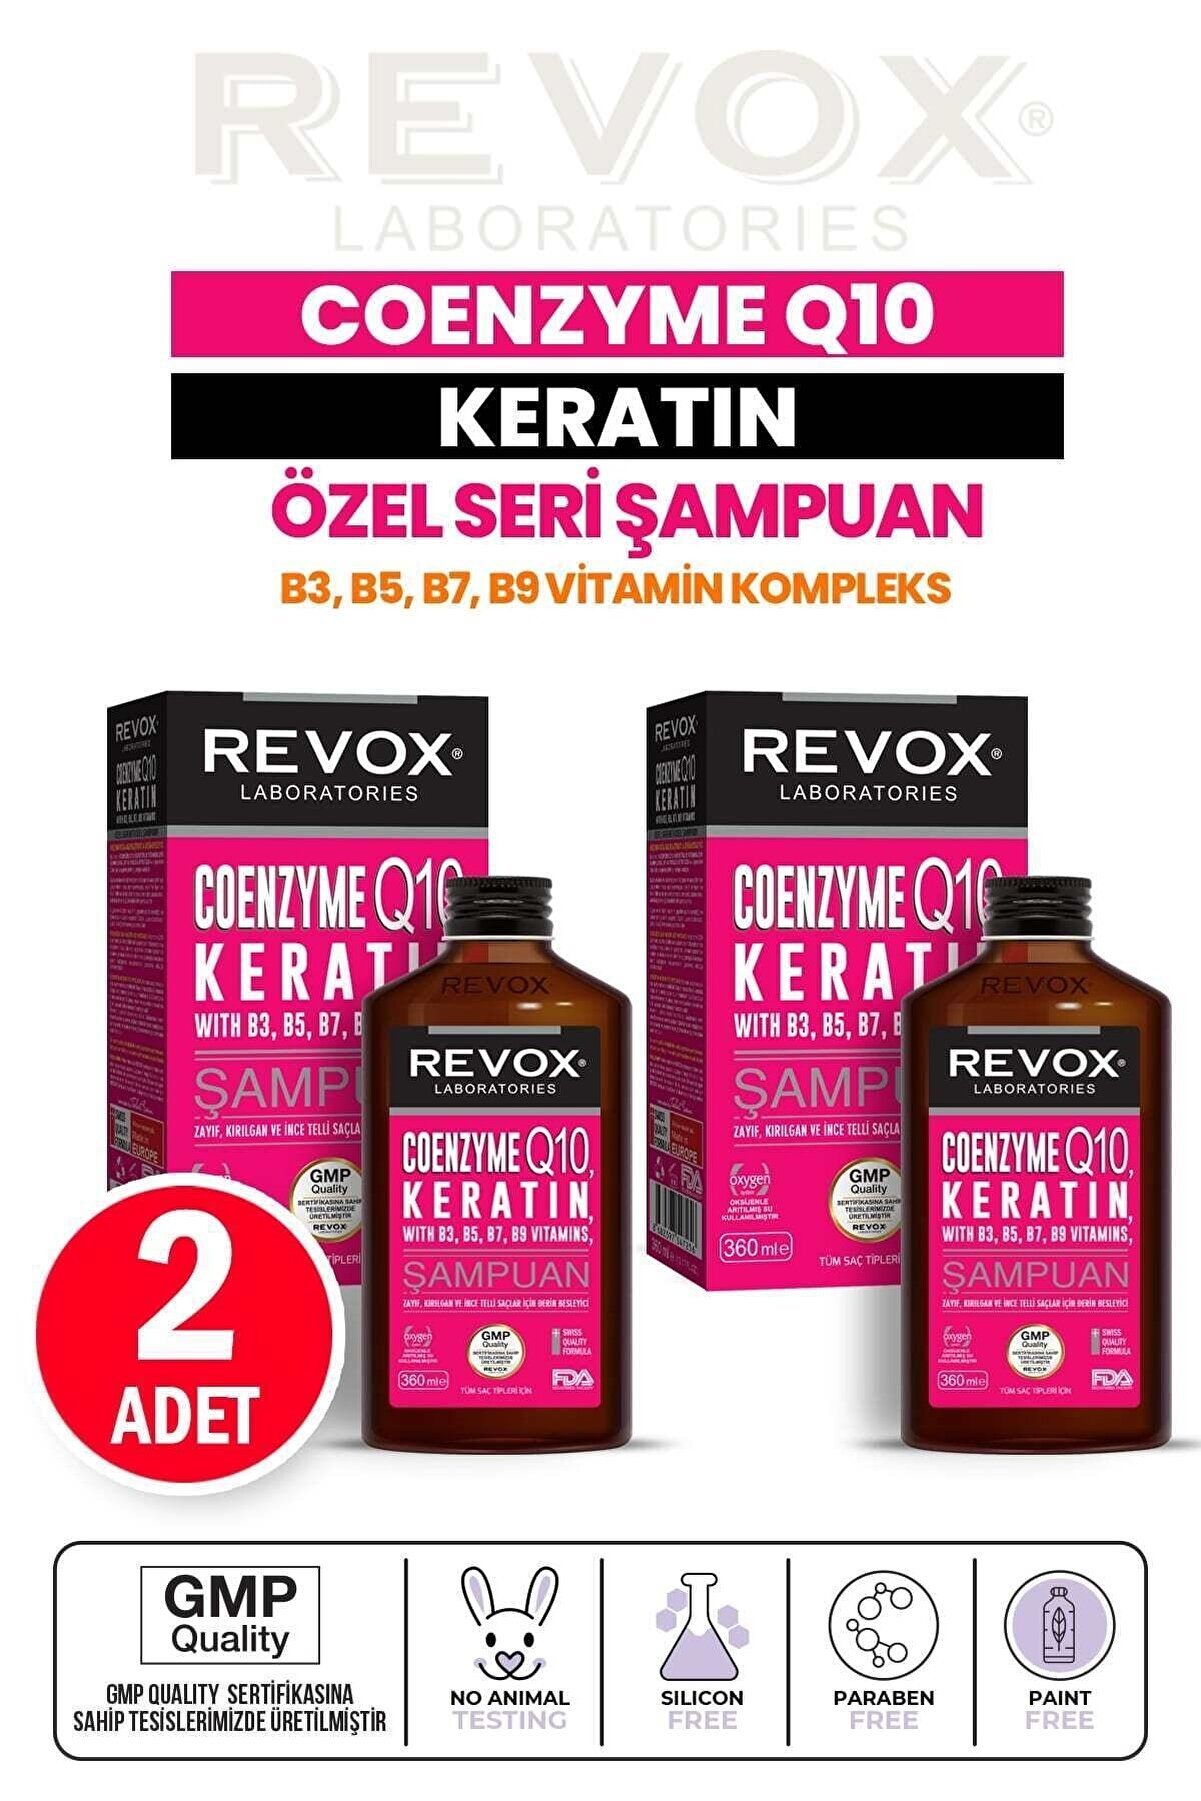 Revox Coenzyme Q10 Keratin Vitamain Kompleks Güçlendirici Yenileyici Derin Besleyici Şampuan 2 Adet